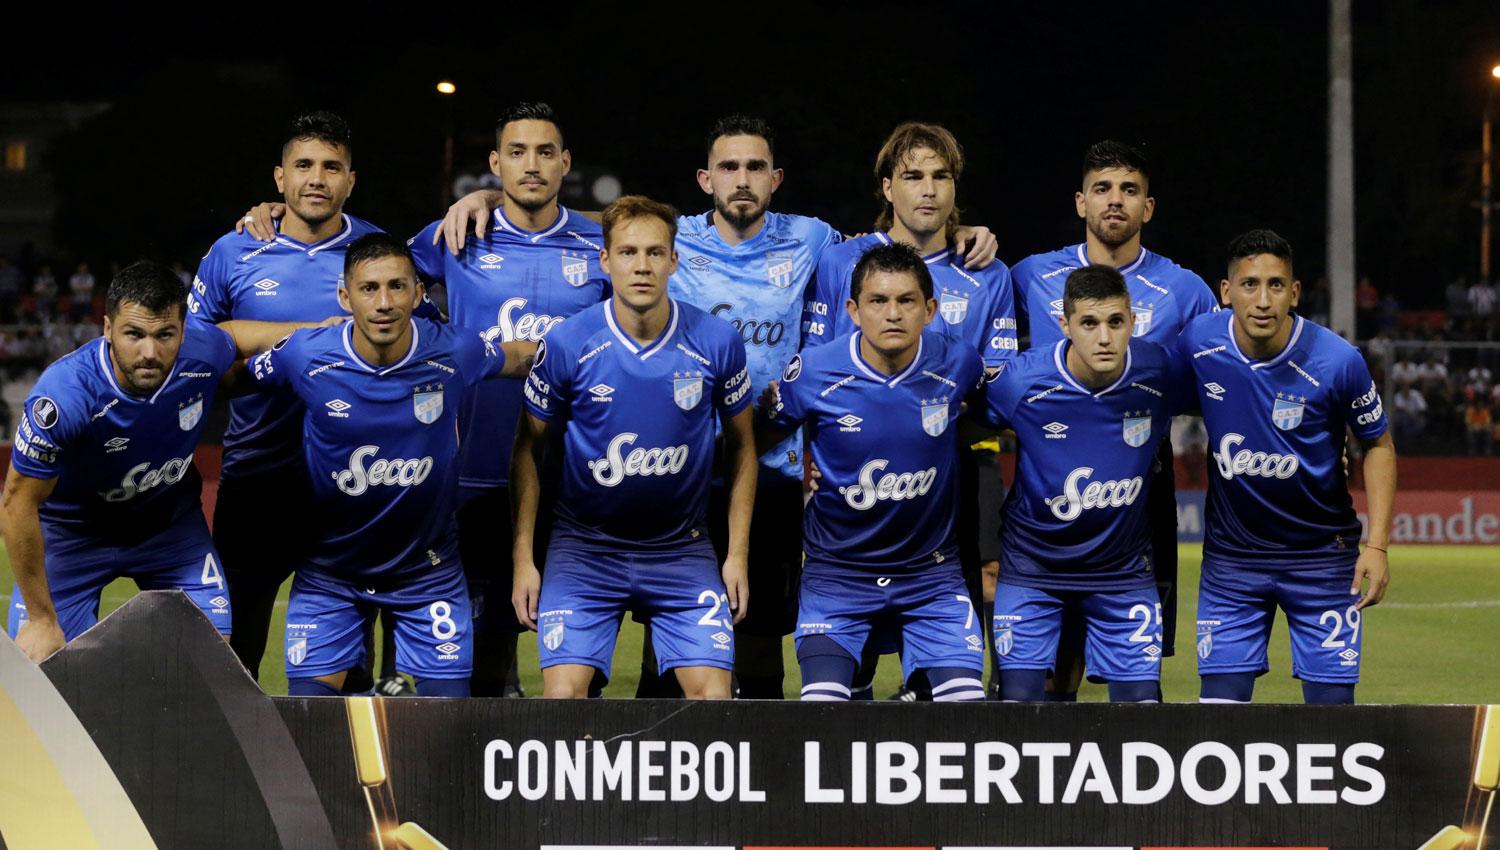 EL PRIMERO. Sánchez jugó su primer partido en Libertadores en Asunción, ante Libertad, en la temporada 2018.